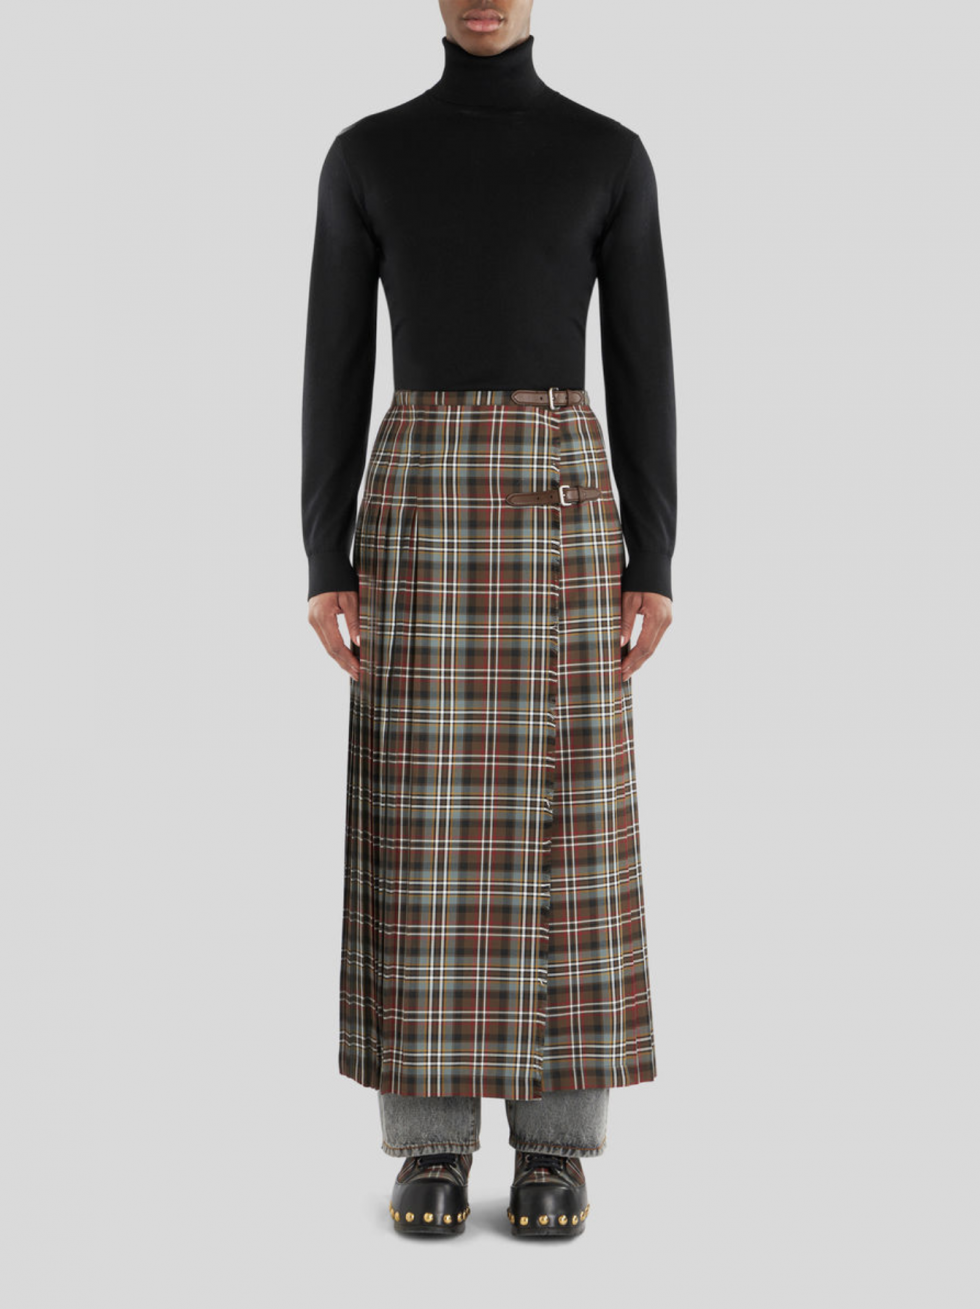 Ejemplo de falda escocesa masculina